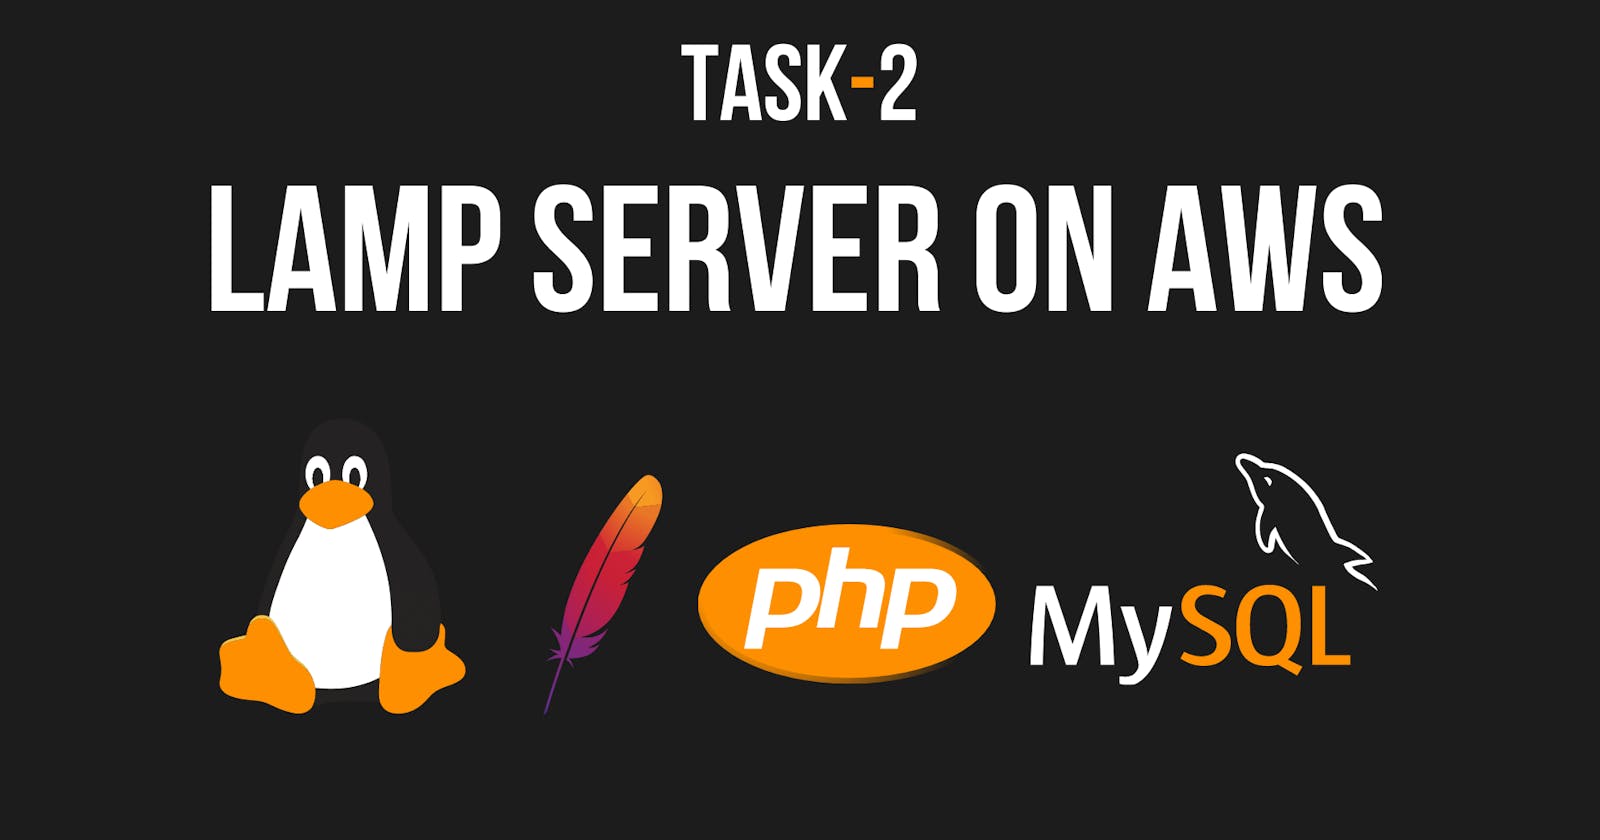 LAMP Server on AWS | Task - 2